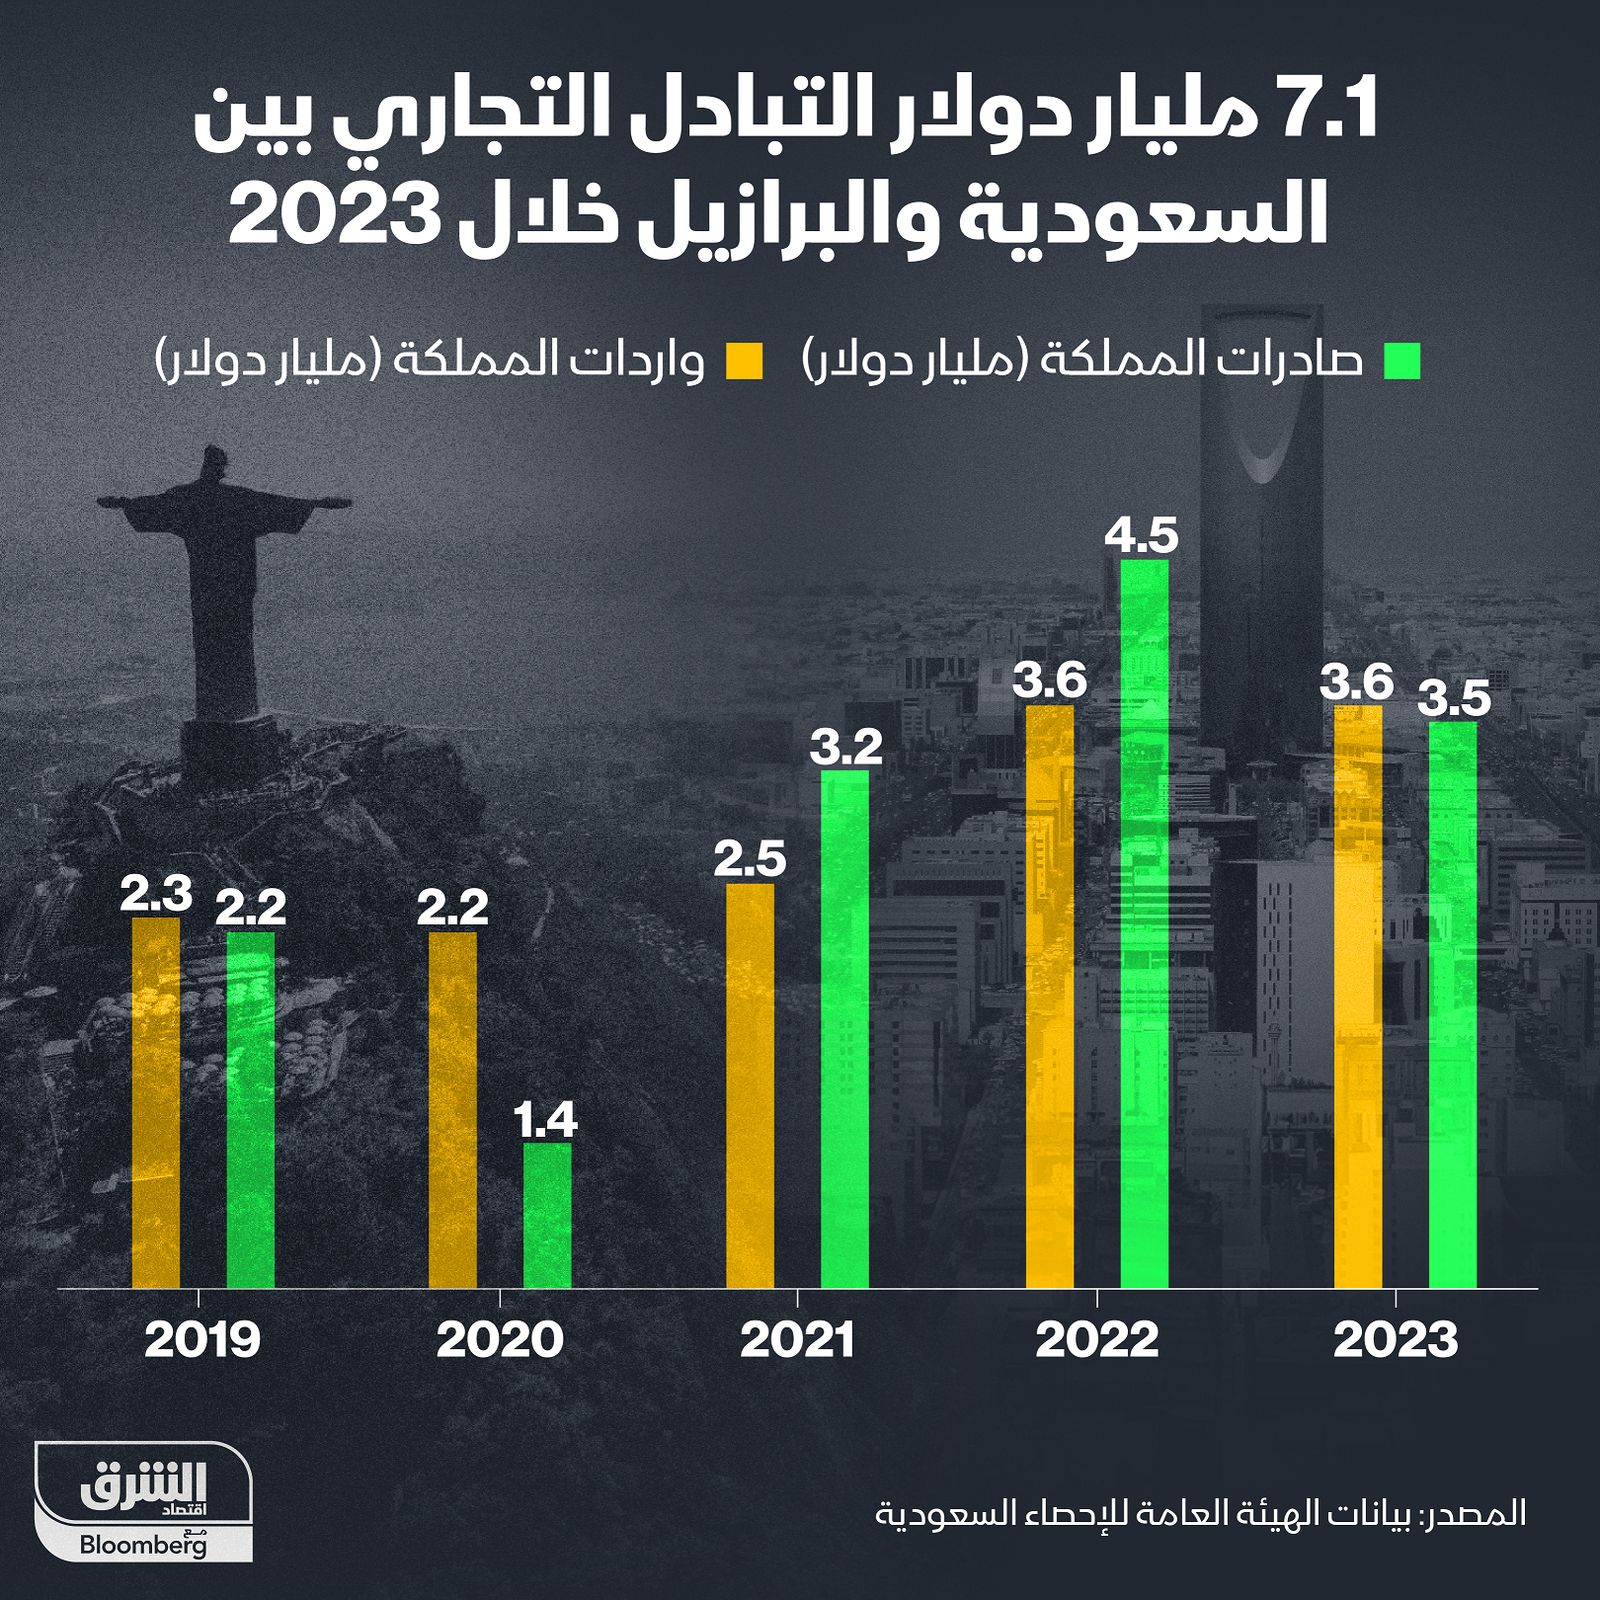 إنفوغراف: التجارة البينية السعودية البرازيلية تتراجع مليار دولار" width="252" height="168" loading="lazy